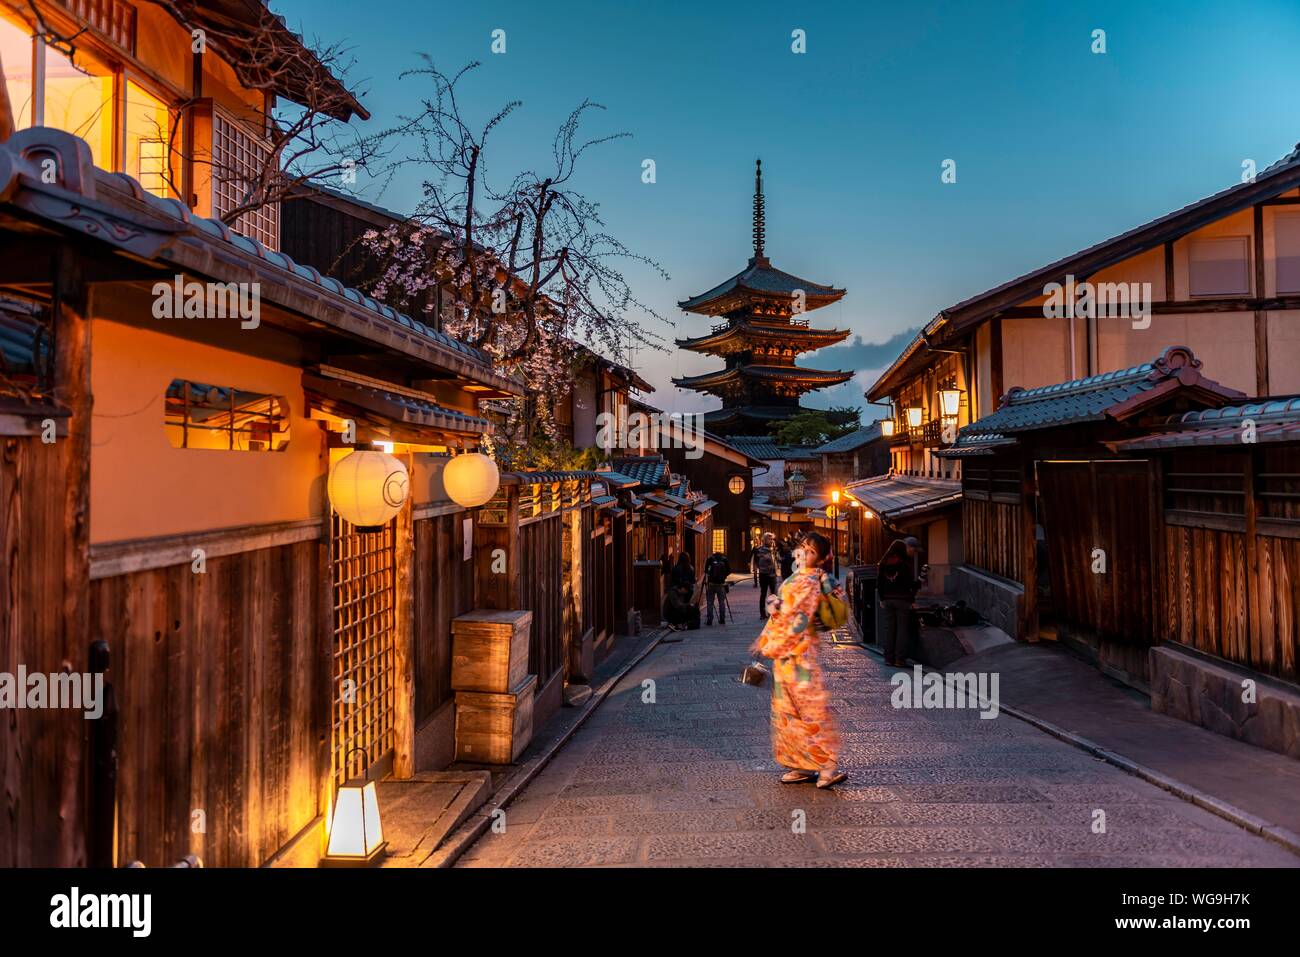 Frau im Kimono posiert in einer Gasse, Yasaka Dori historische Gasse in der Altstadt mit dem traditionellen japanischen Häuser, zurück fünfstöckige Yasaka Pagode Stockfoto